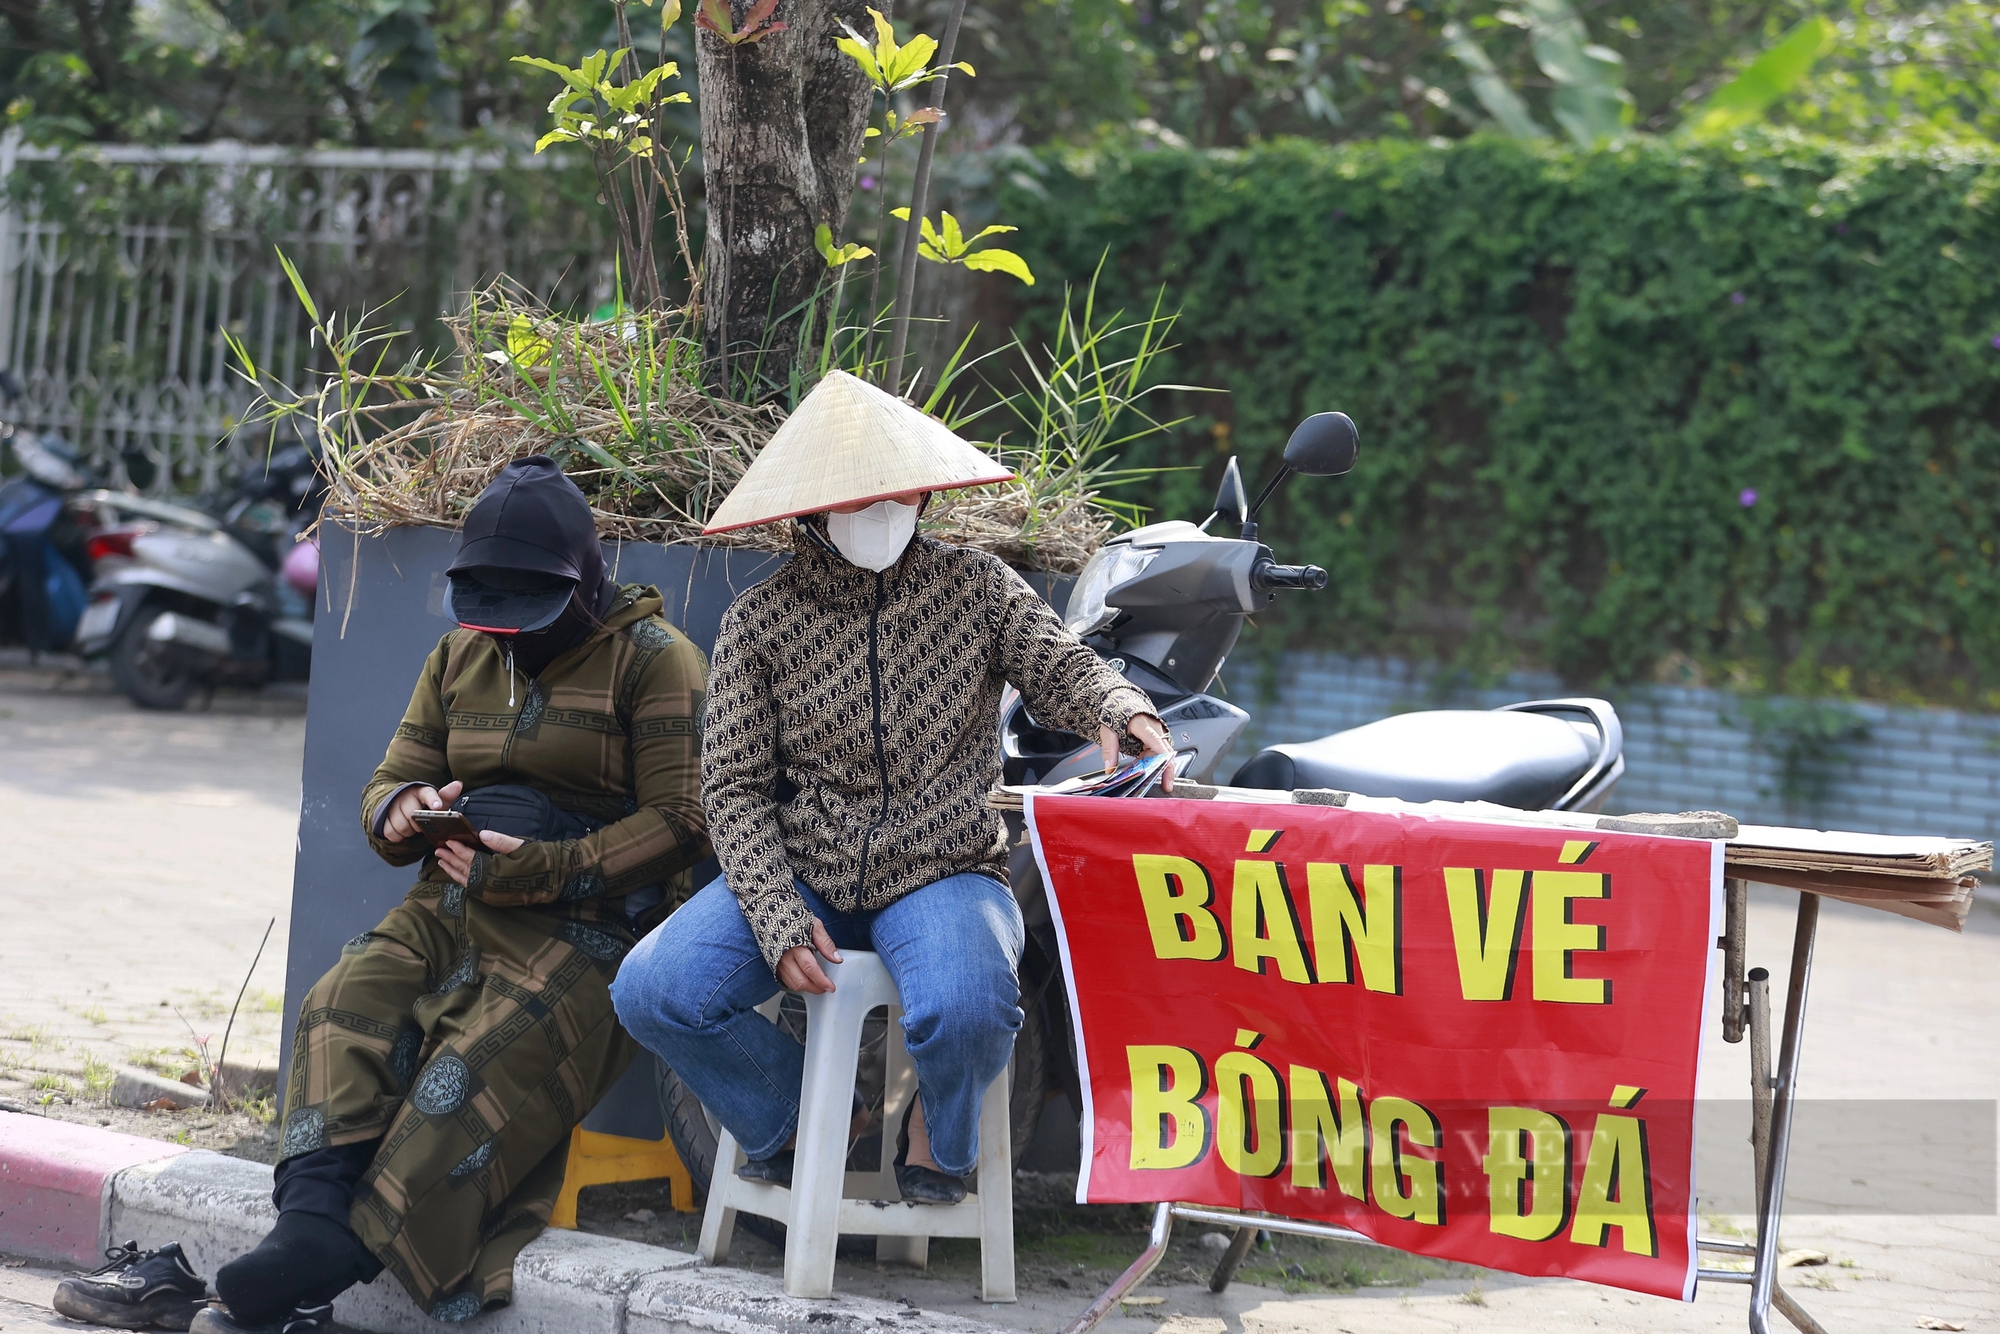 Thời tiết nắng nóng, phe vé ngao ngán vì vé trận Việt Nam - Indonesia... ế- Ảnh 10.